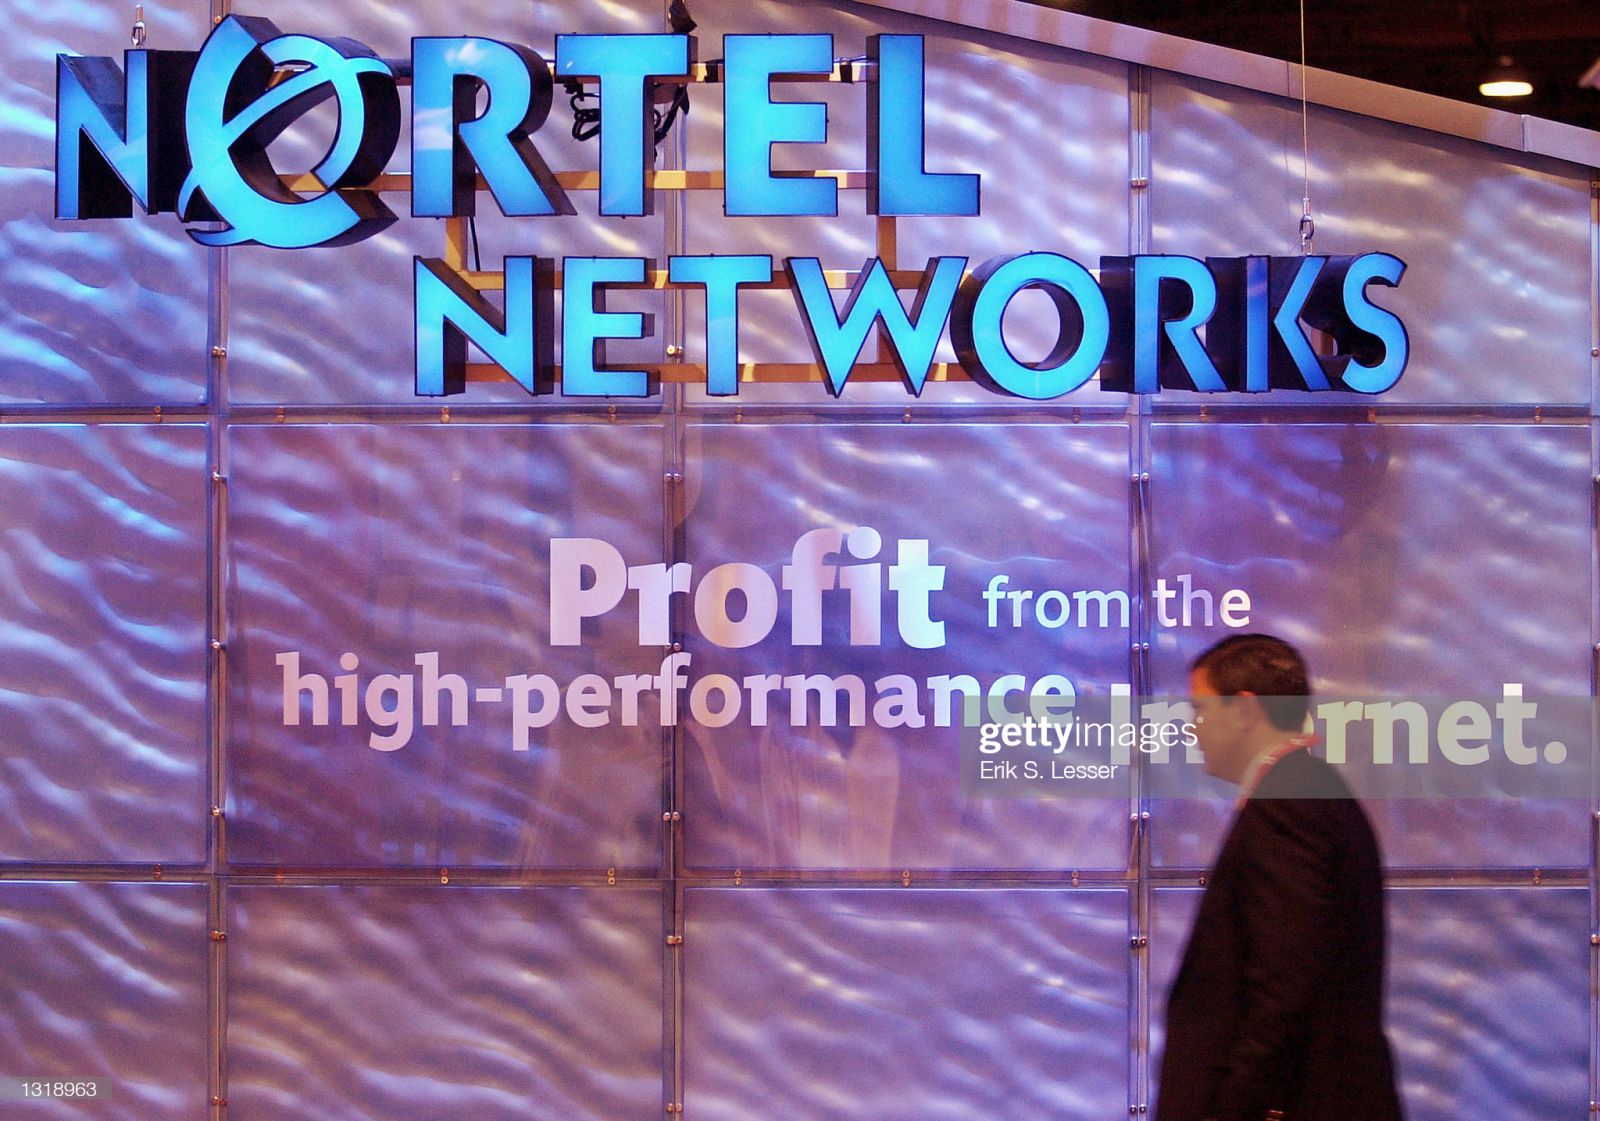 Gian hàng Nortel Networks ngày 5 tháng 6 năm 2001 tại Trung tâm Đại hội Thế giới Georgia ở Atlanta, Mỹ.